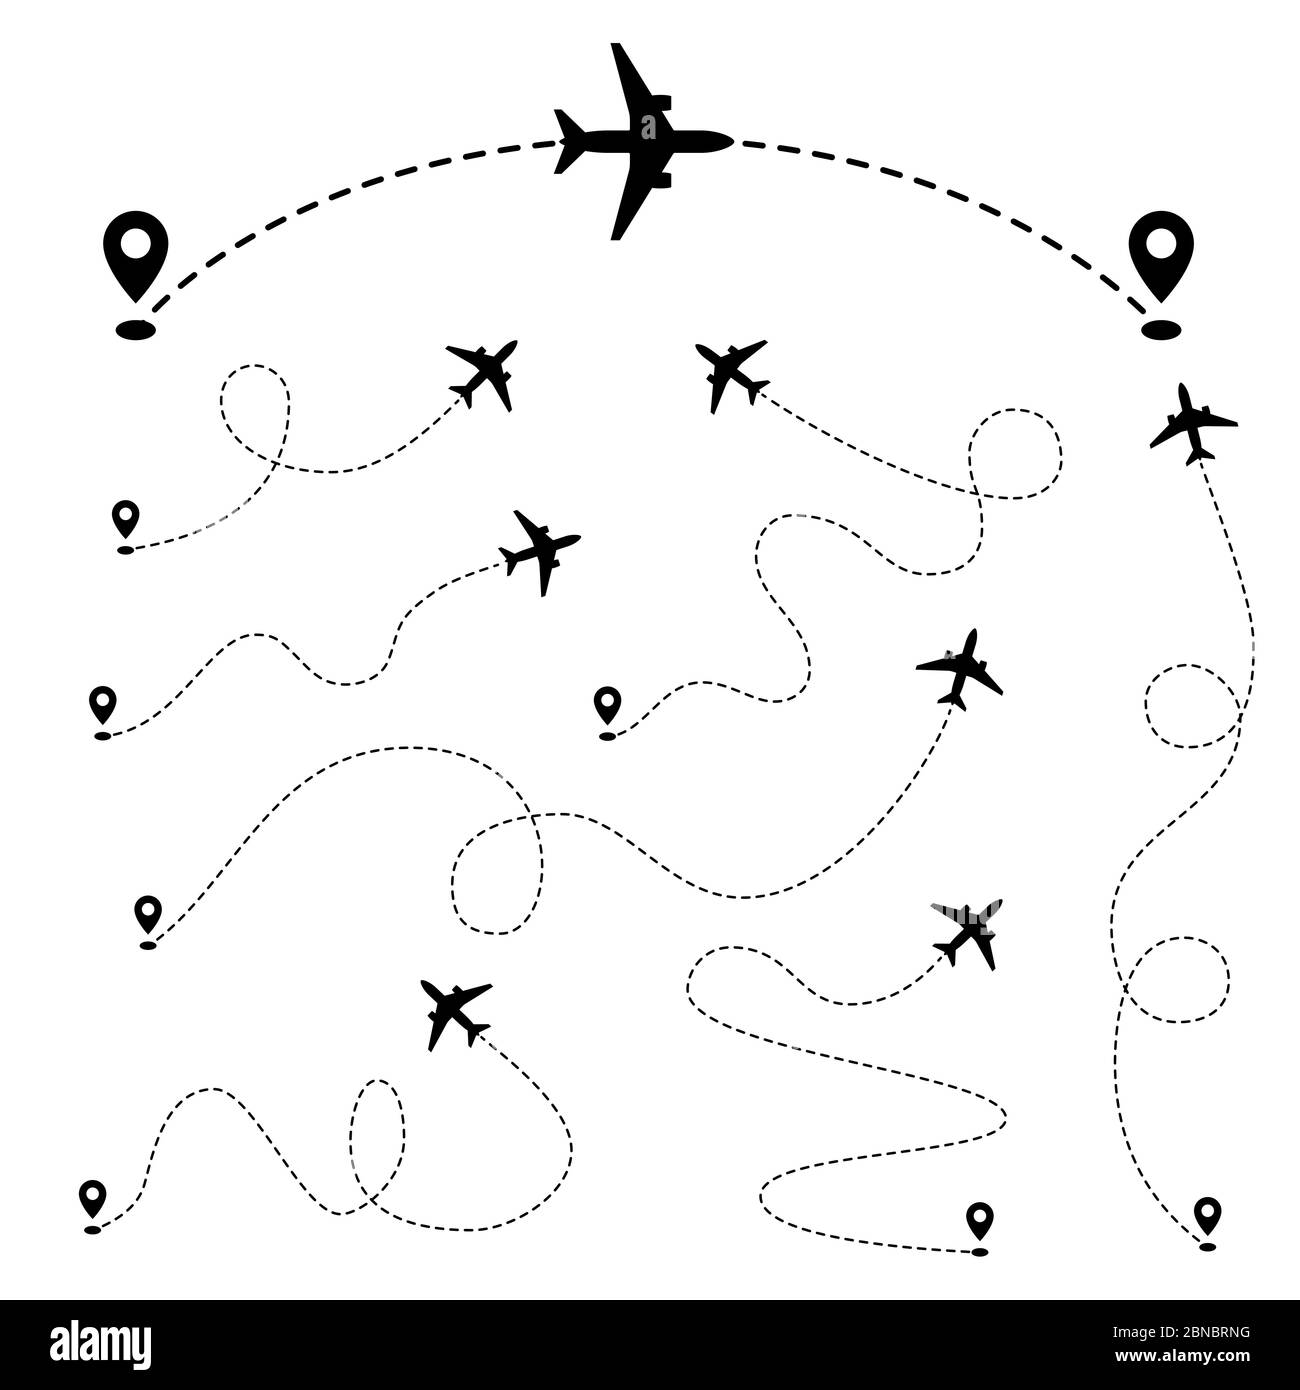 Percorsi aerei. Linea di traccia tratteggiata piana dal punto. Gruppo vettoriale. Aereo di percorso, linea di rotta dell'aereo, illustrazione dell'aria di pista Illustrazione Vettoriale